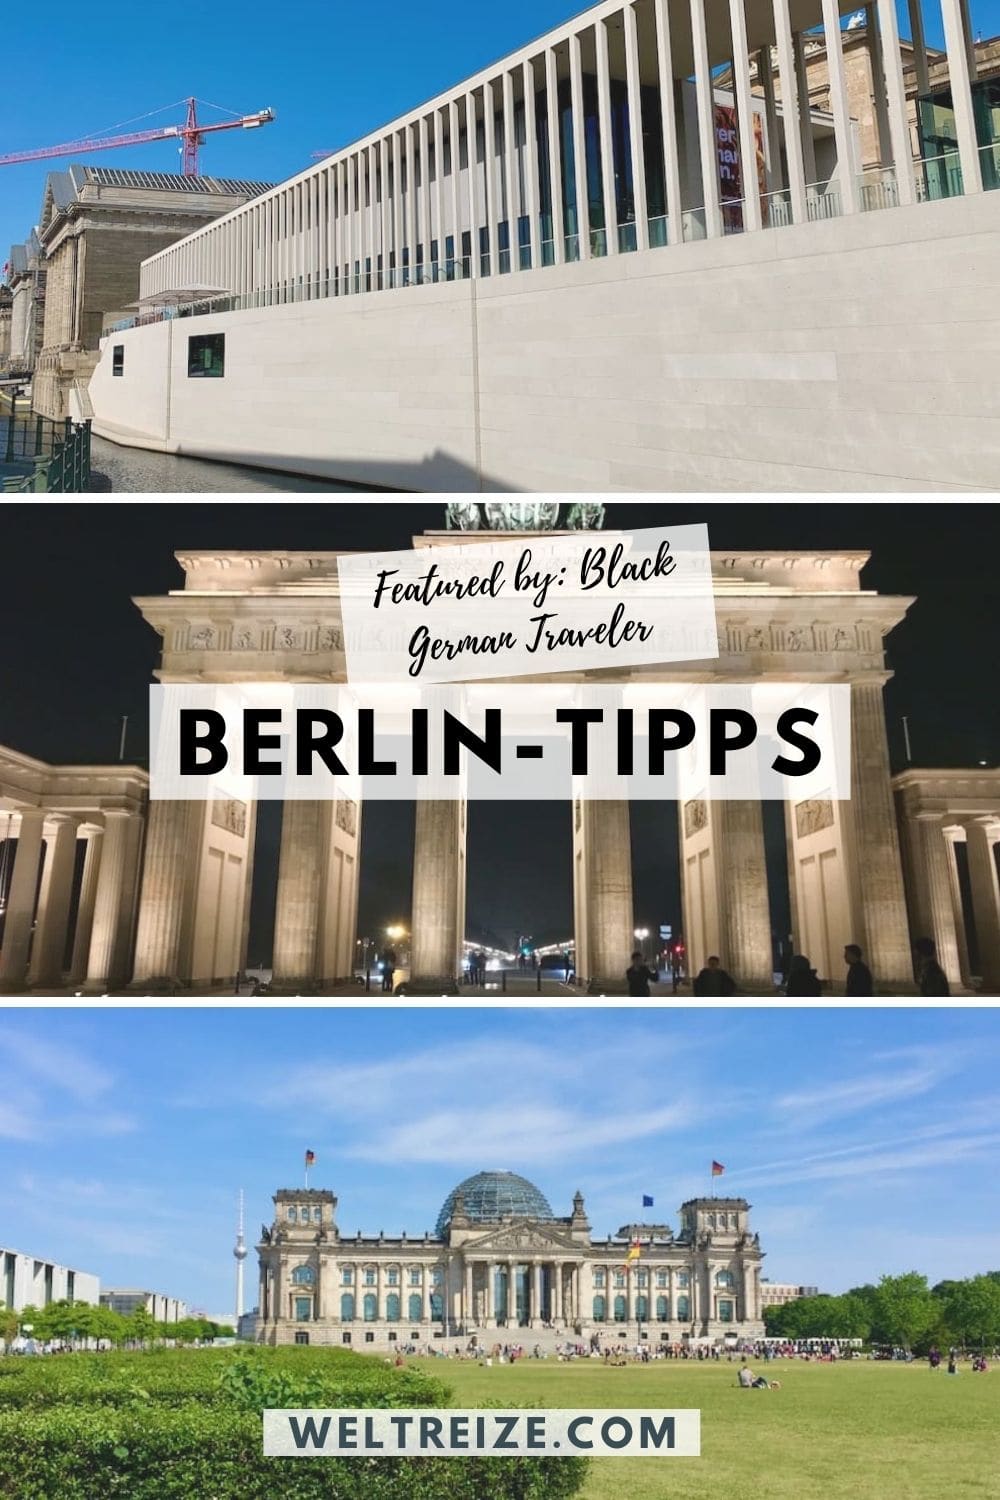 Berlin-Tipps empfehlen